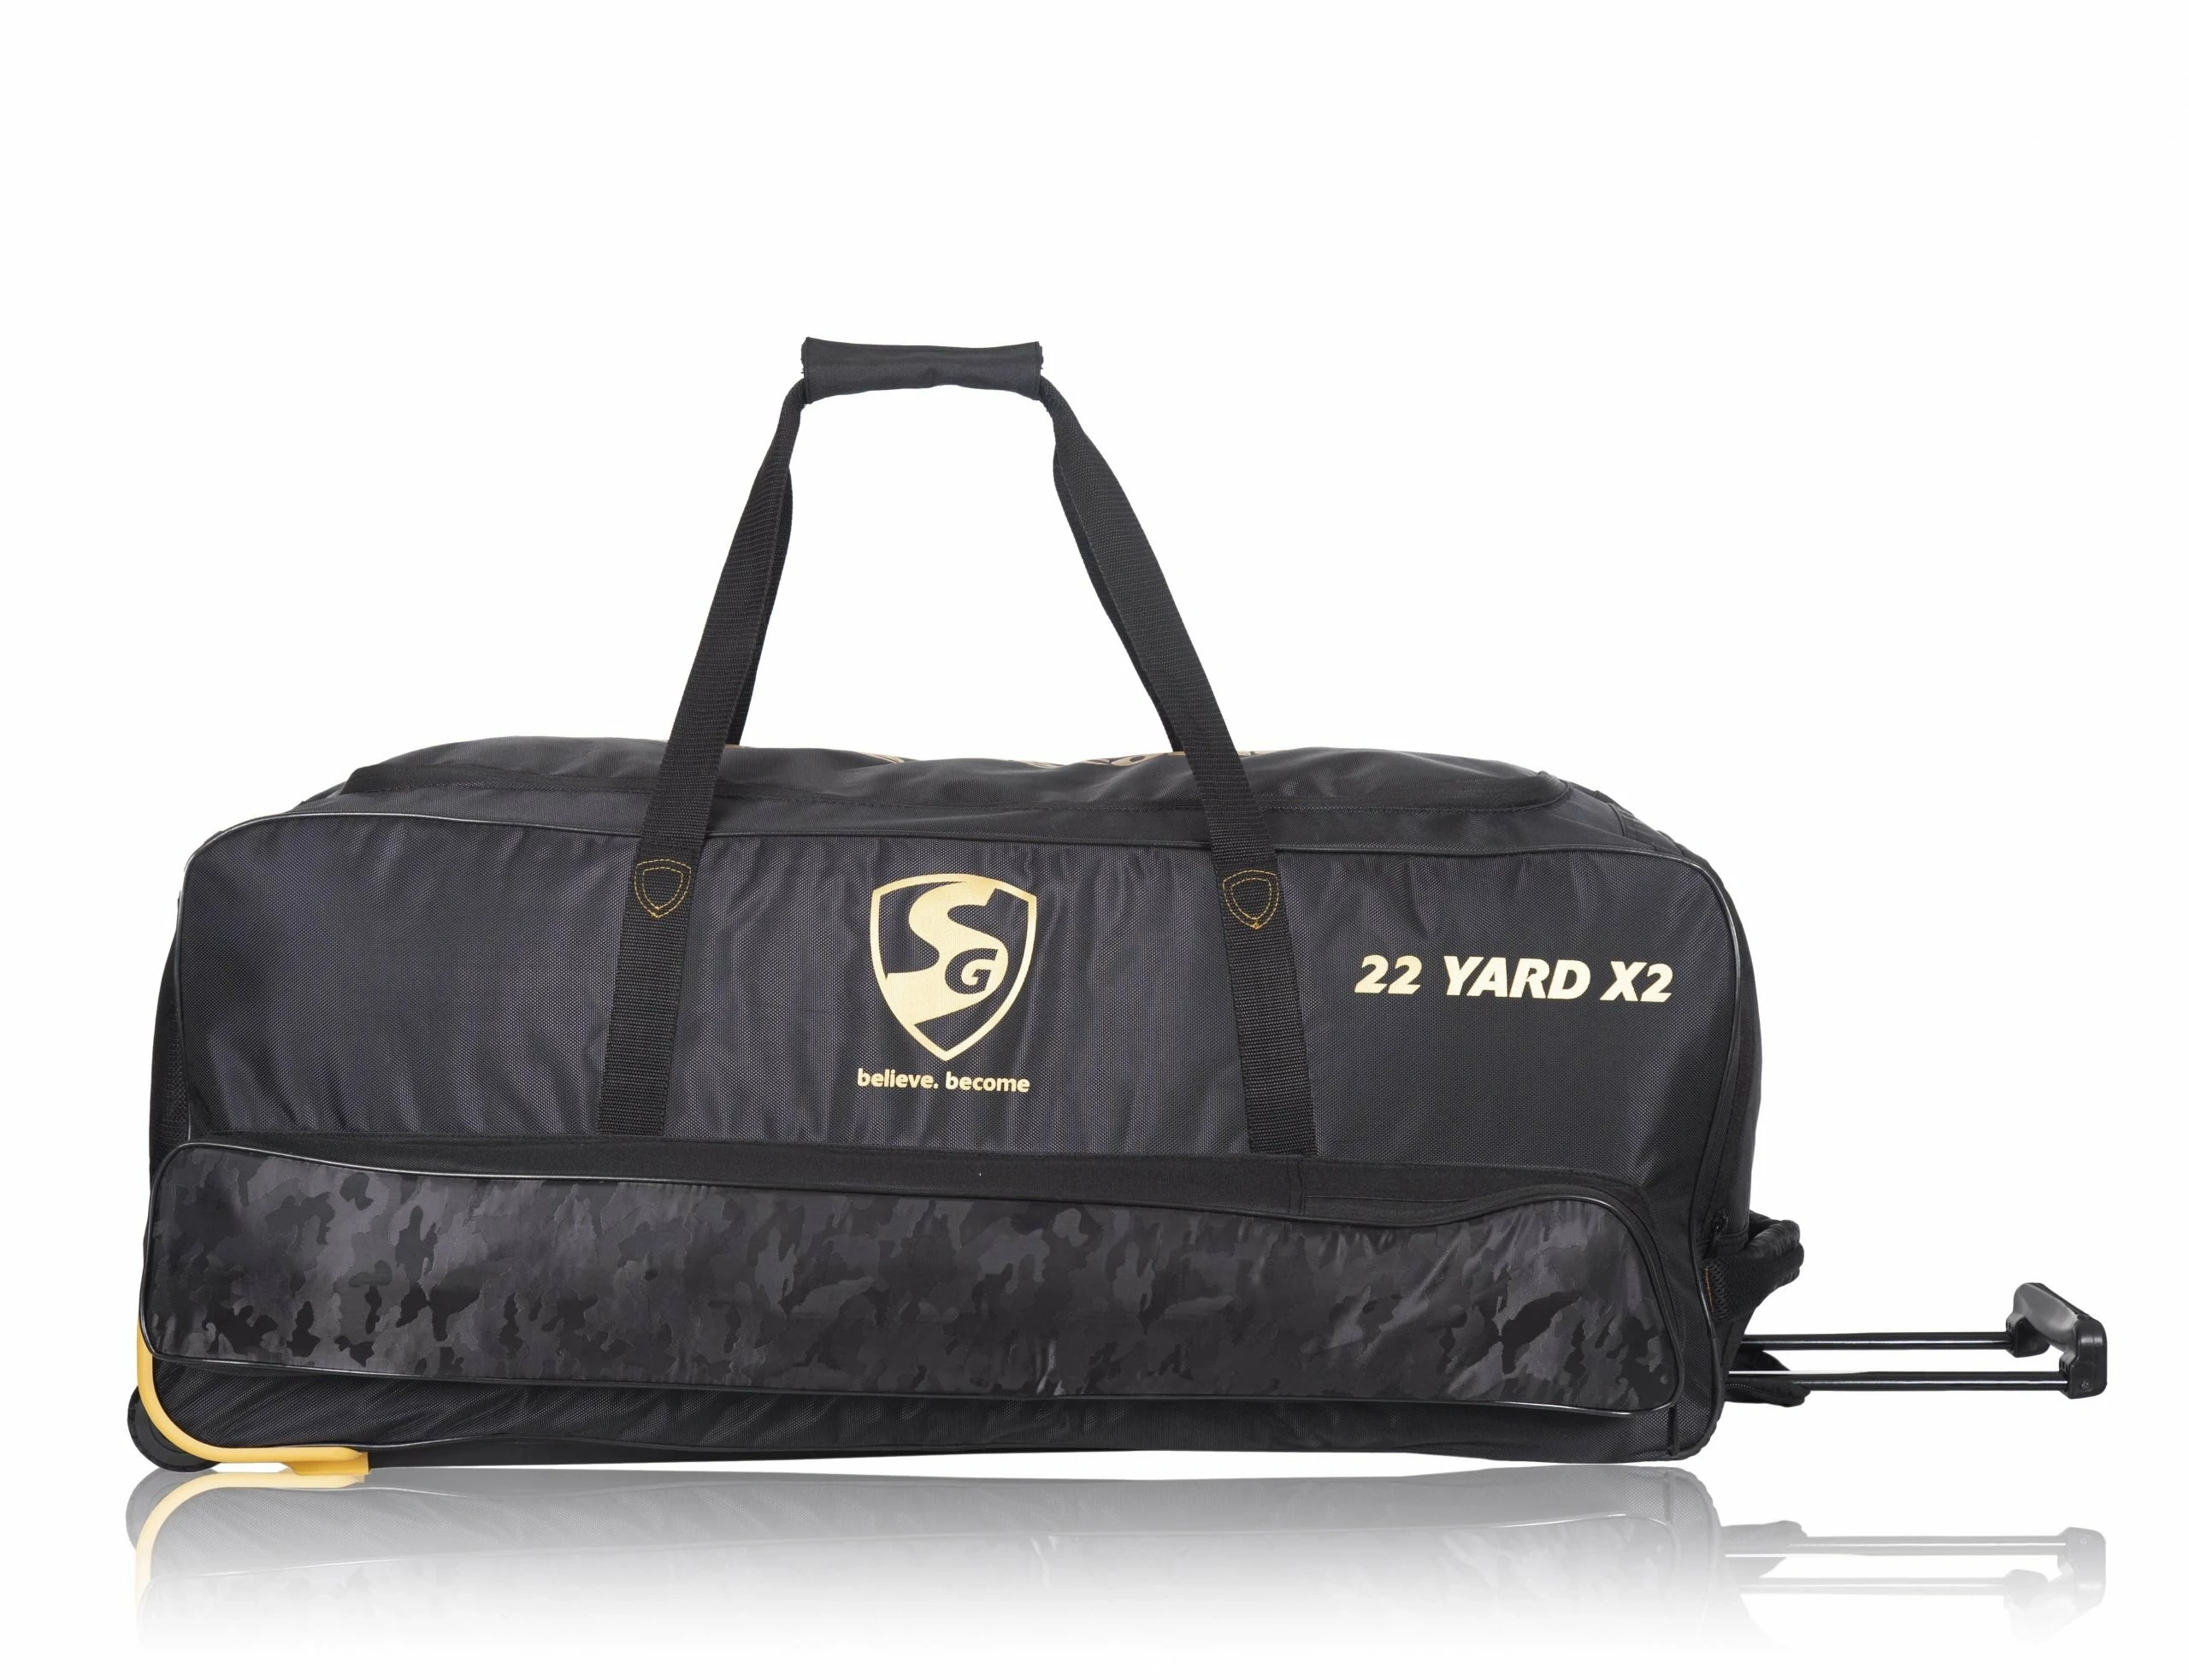 SG 22 YARD X2 TROLLEY Kit Bag-38218